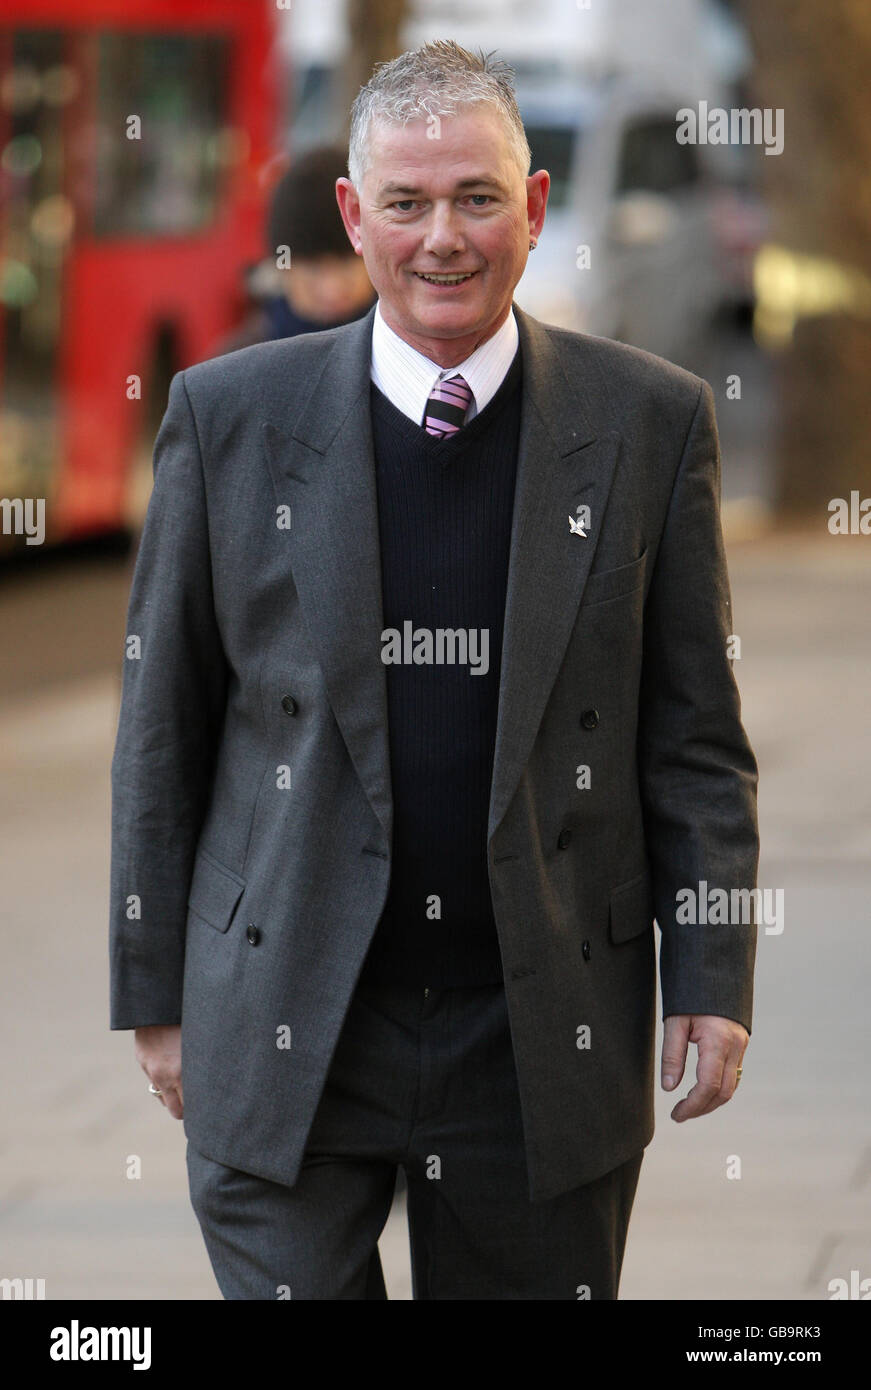 El propietario Hamish Howitt llega al Tribunal Superior de Londres, donde está encerrado en una batalla legal por los movimientos de un consejo local para cerrar su negocio después de que desafió la prohibición de fumar. Foto de stock